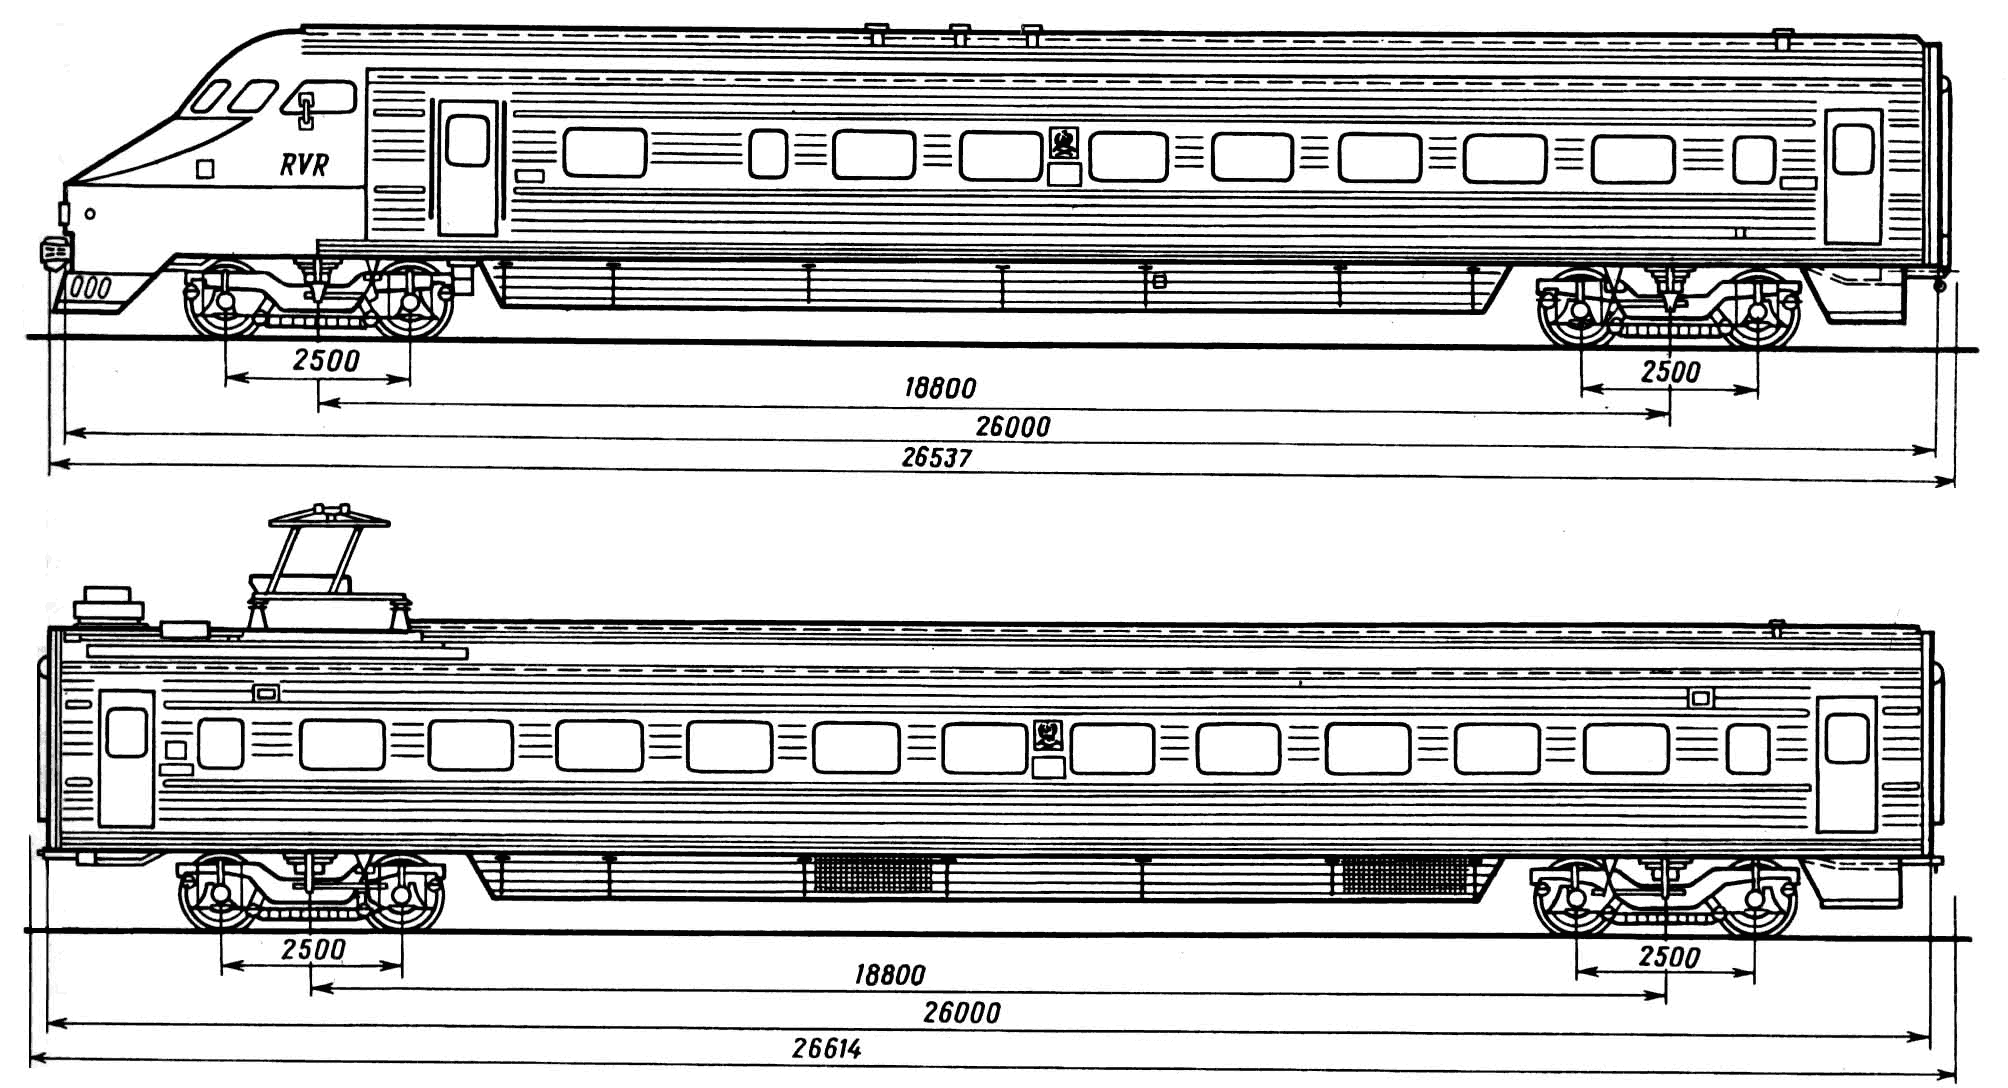 ER200 train blueprint